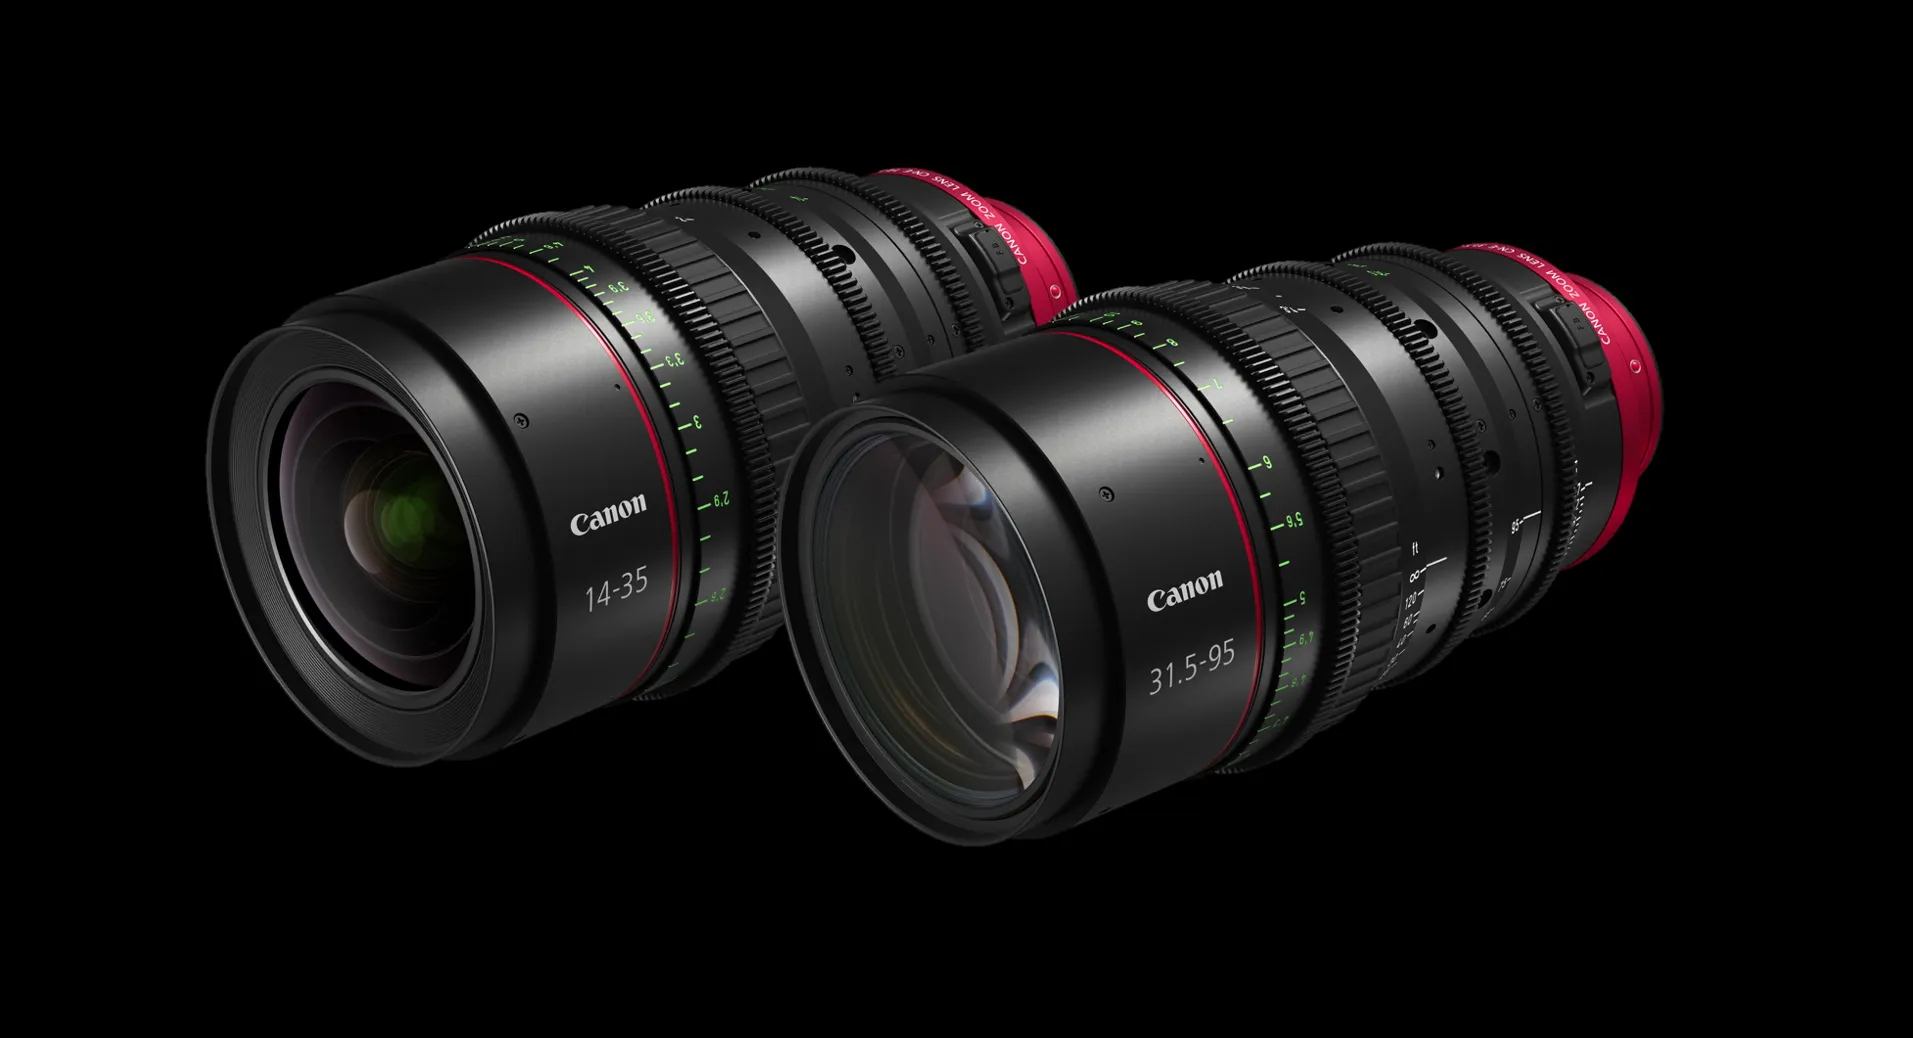 Canon ra mắt 2 ống kính Flex Zoom mới: CN-E14-35mm T1.7 L S và CN-E31.5-95mm T1.7 L S